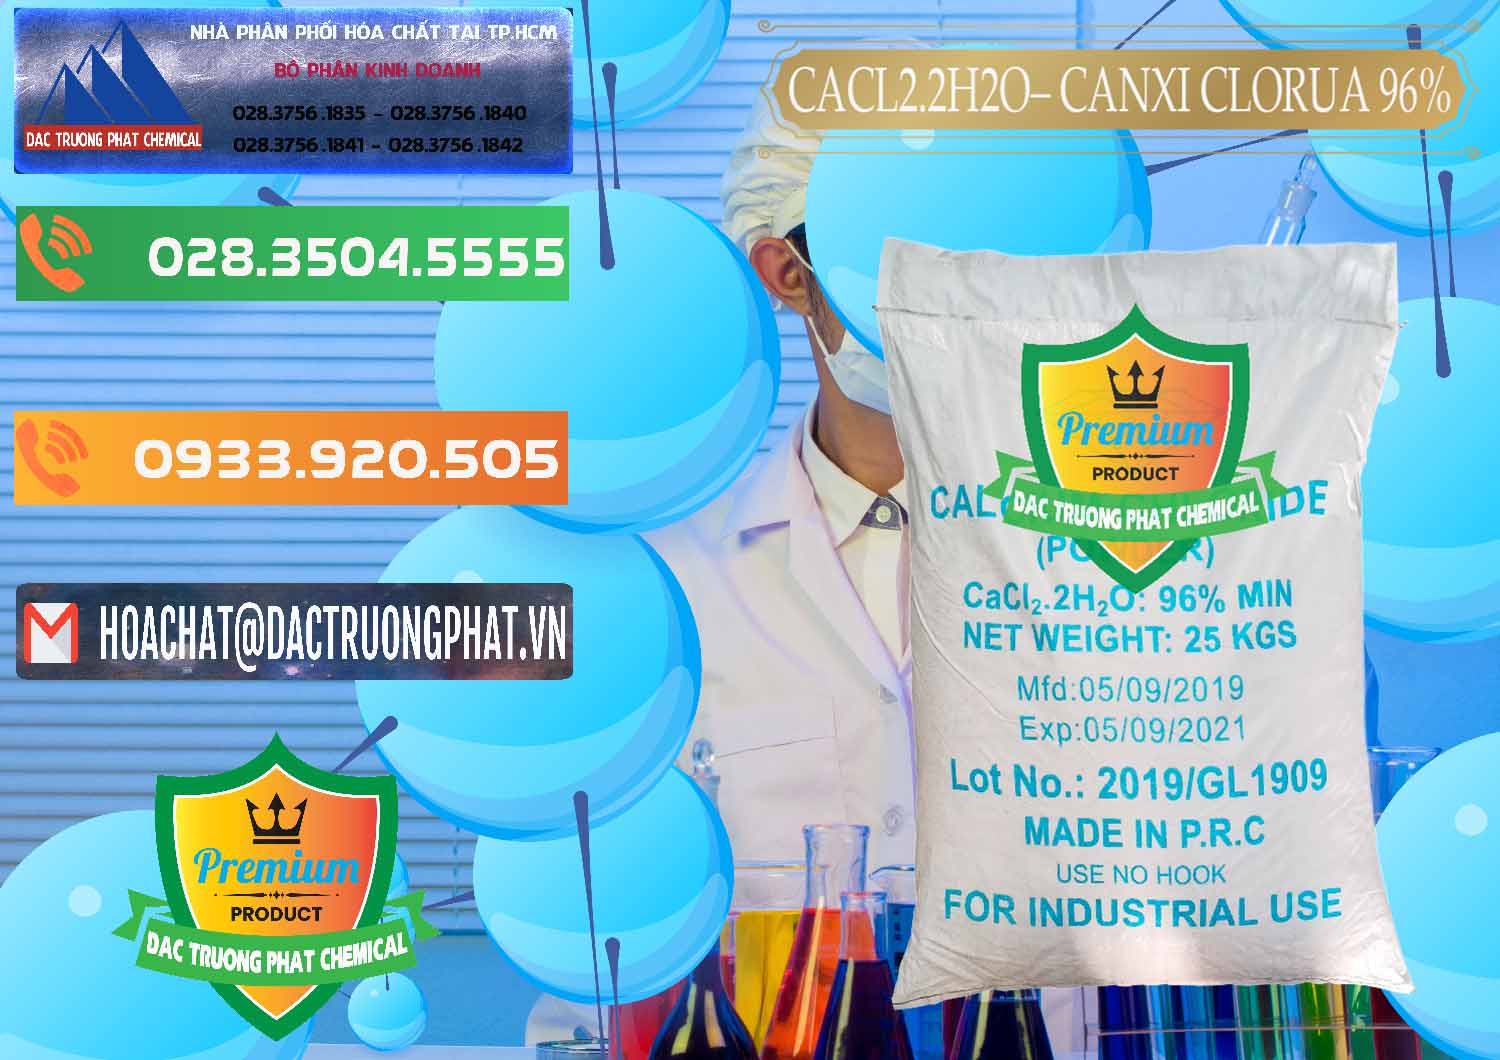 Đơn vị phân phối _ bán CaCl2 – Canxi Clorua 96% Logo Kim Cương Trung Quốc China - 0040 - Nơi chuyên bán & cung cấp hóa chất tại TP.HCM - hoachatxulynuoc.com.vn